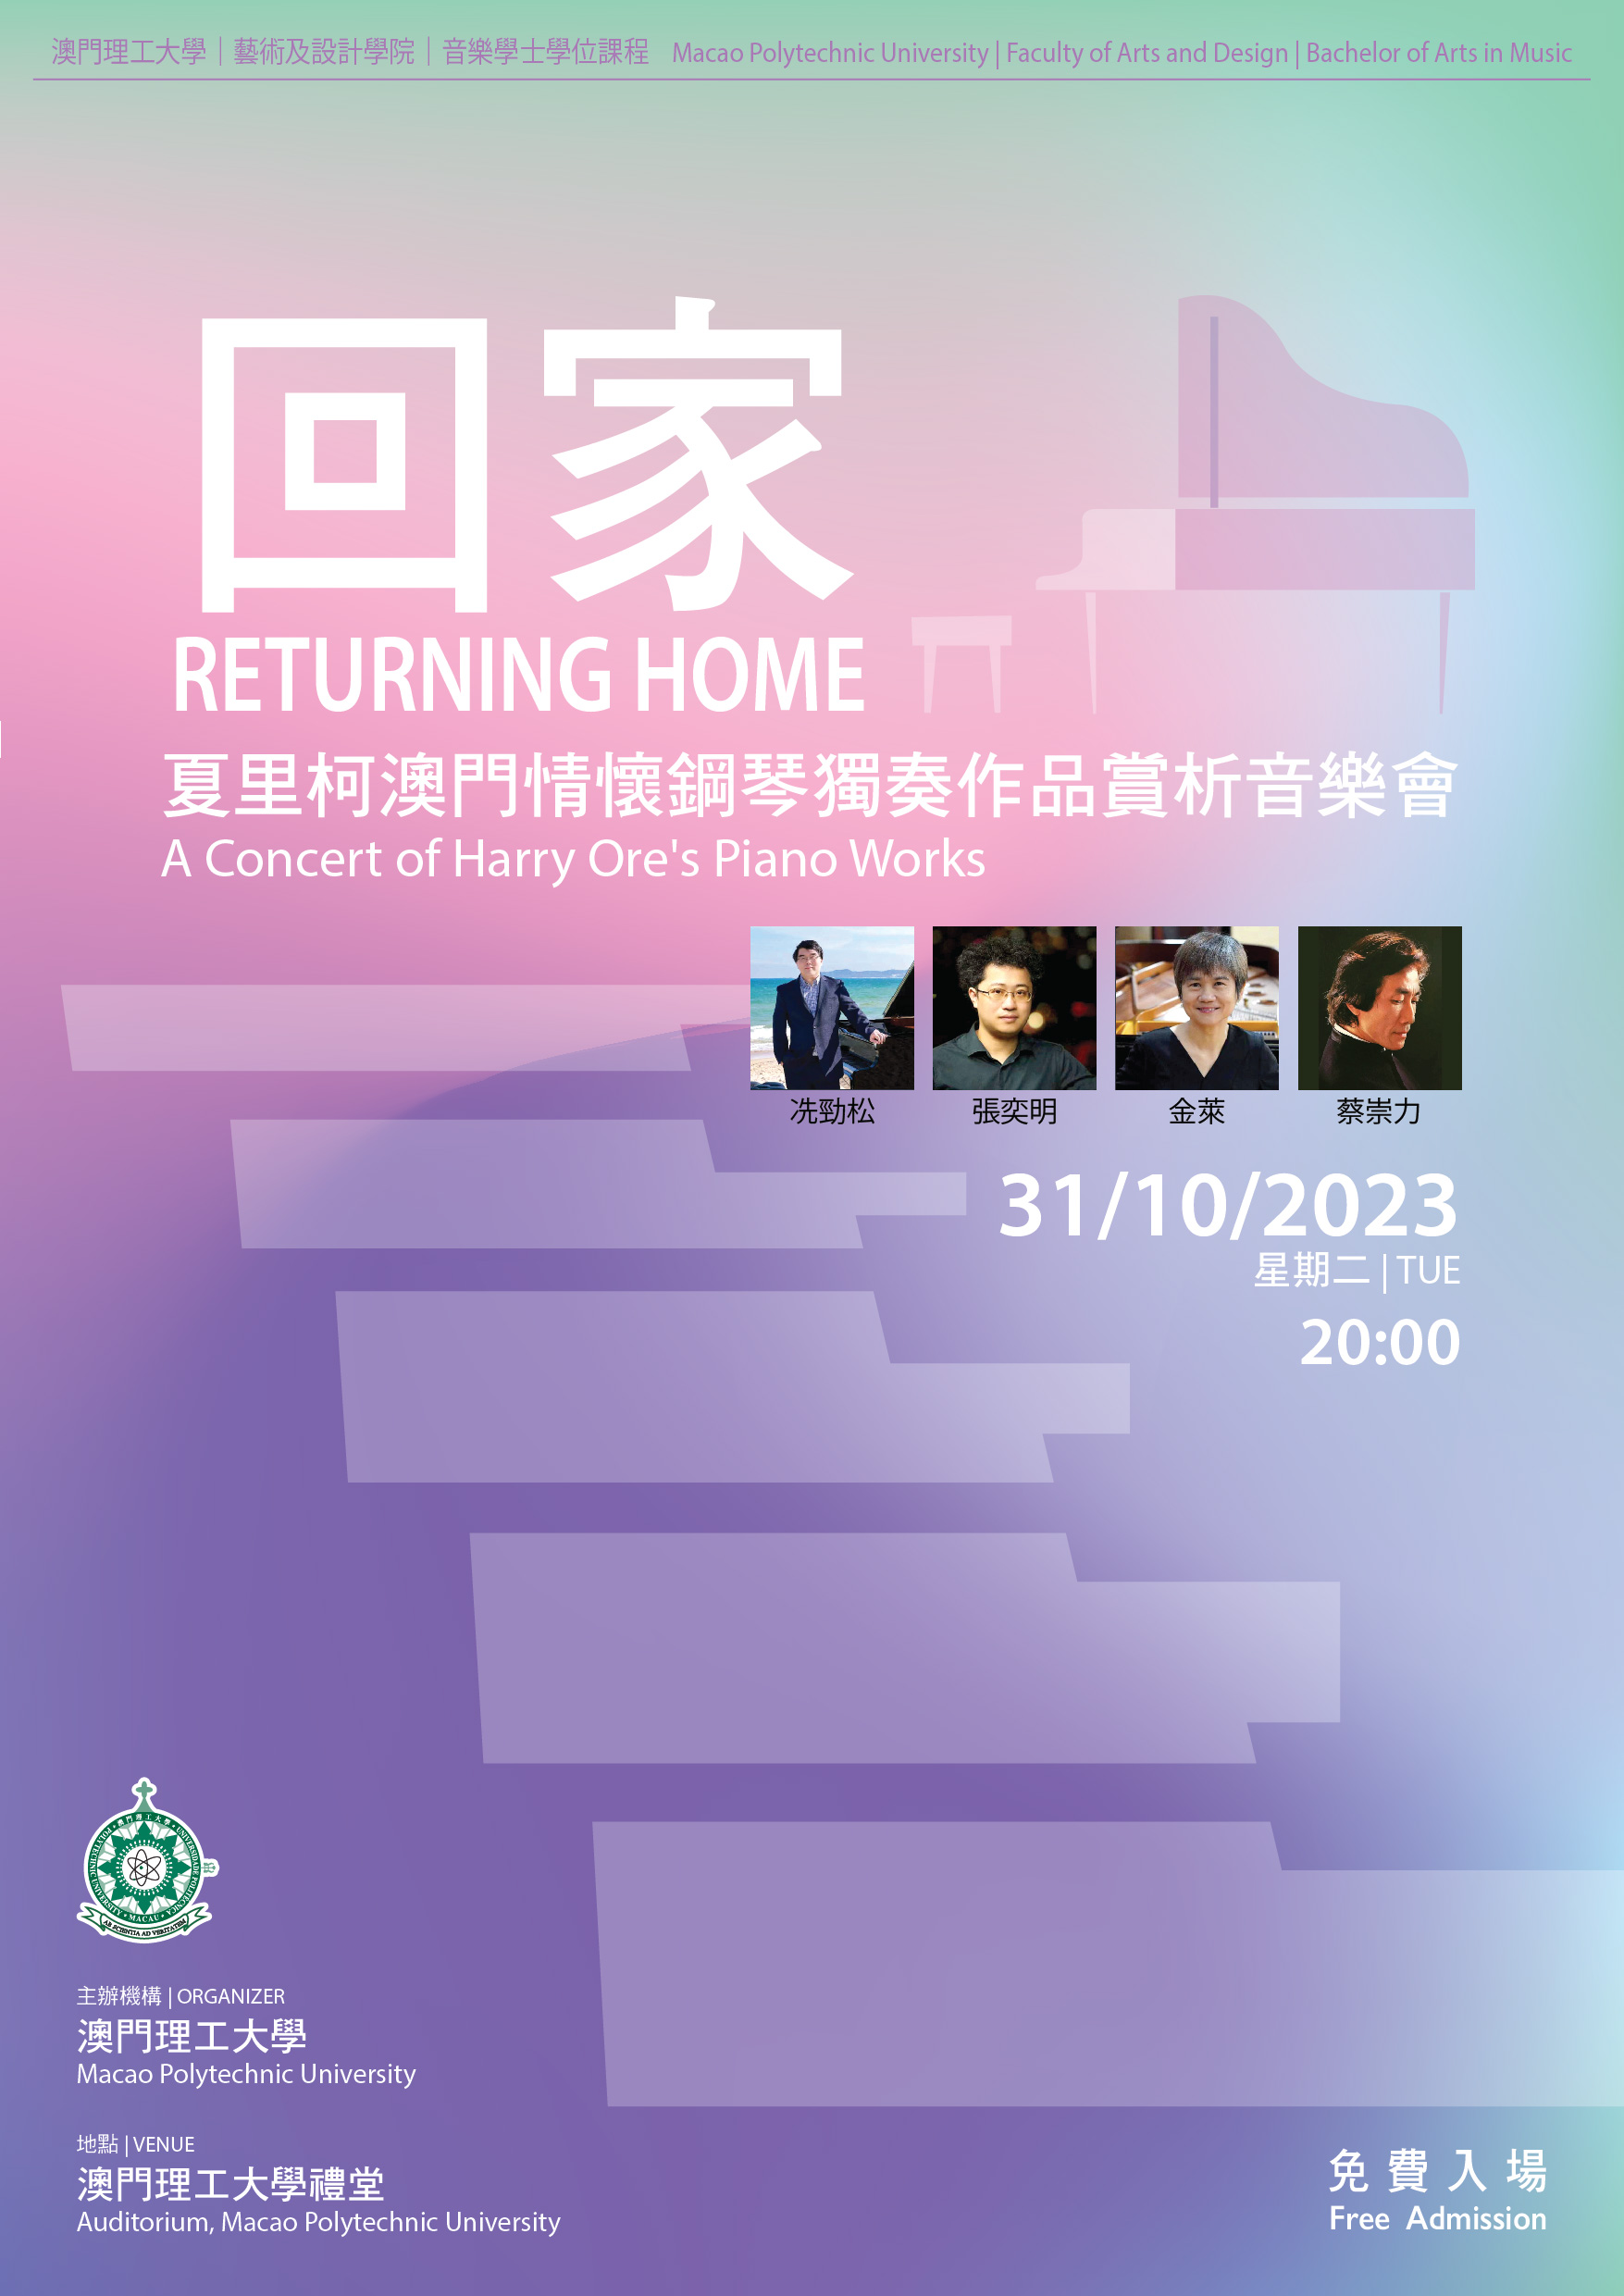 UPM | Concerto de piano com composições de Harry Ore amanhã